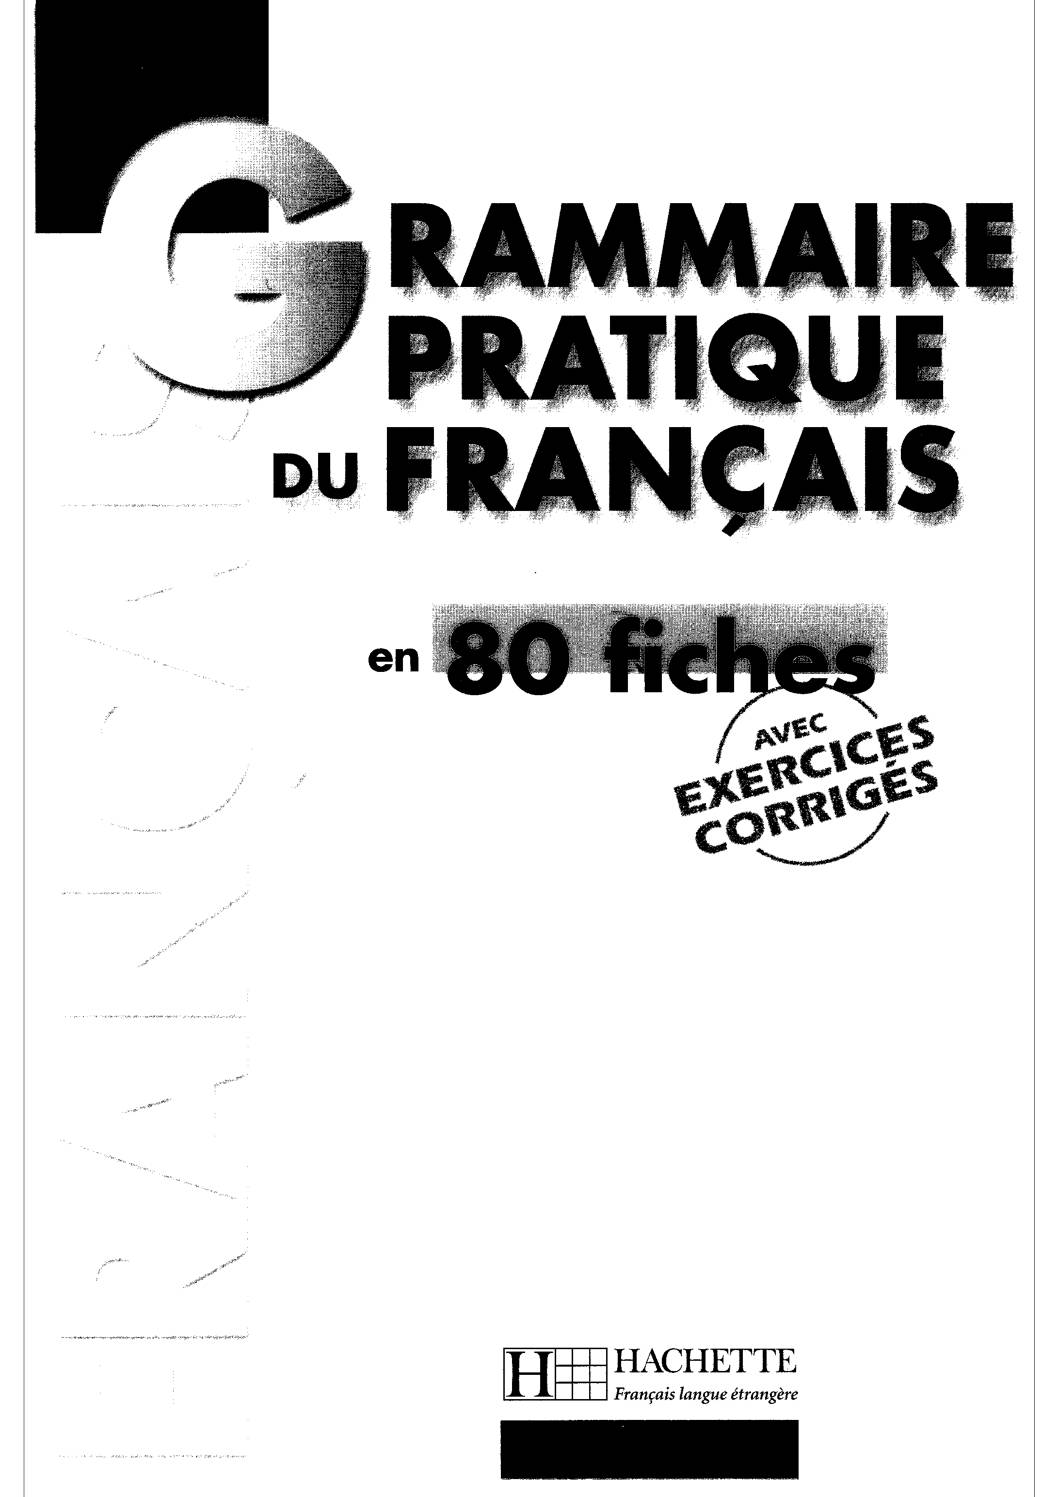 Grammaire pratique du francais en 80 fiches